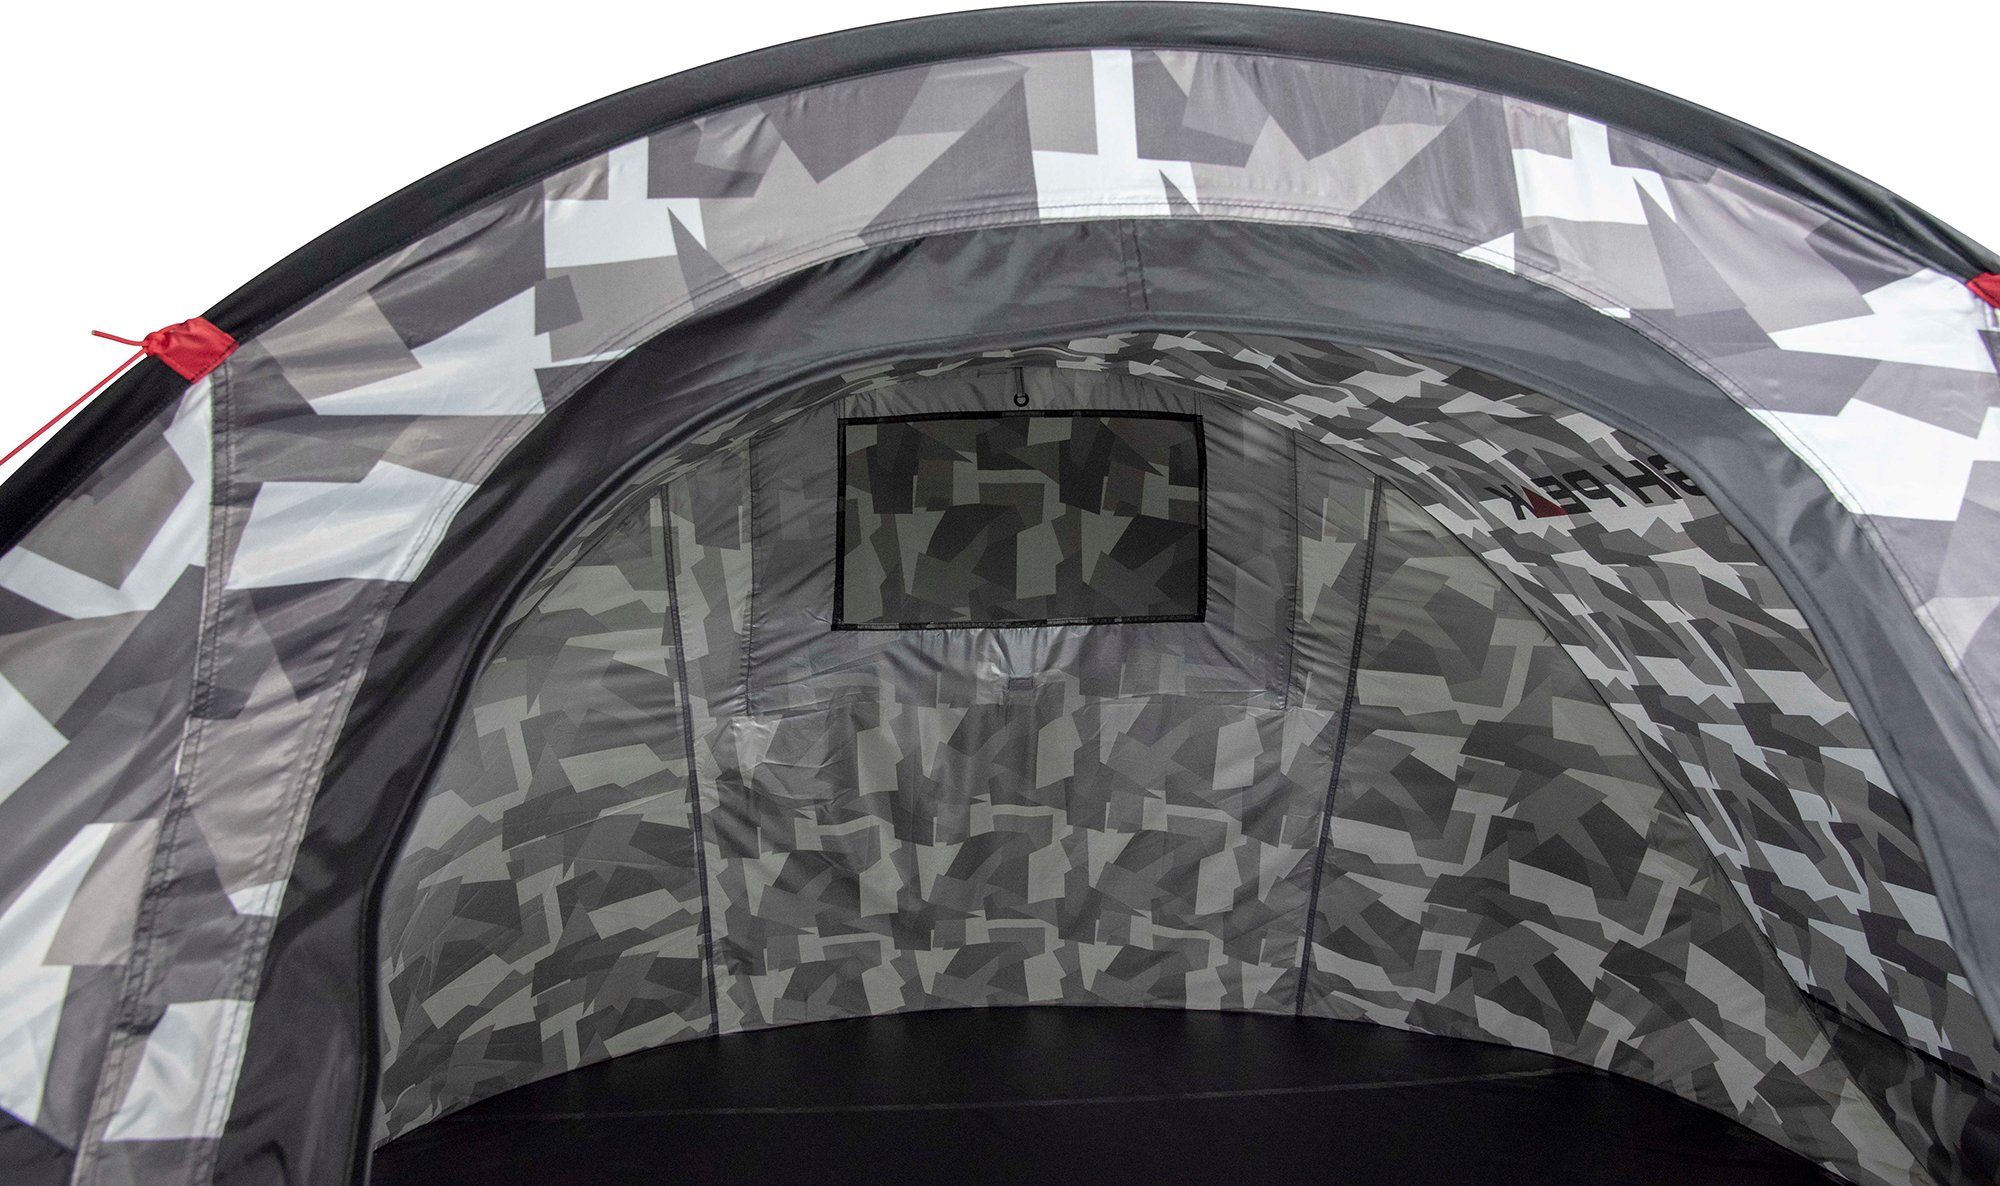 (mit Peak up Pop Wurfzelt 2 Personen: Vision Transporttasche) 3, camouflage High Zelt